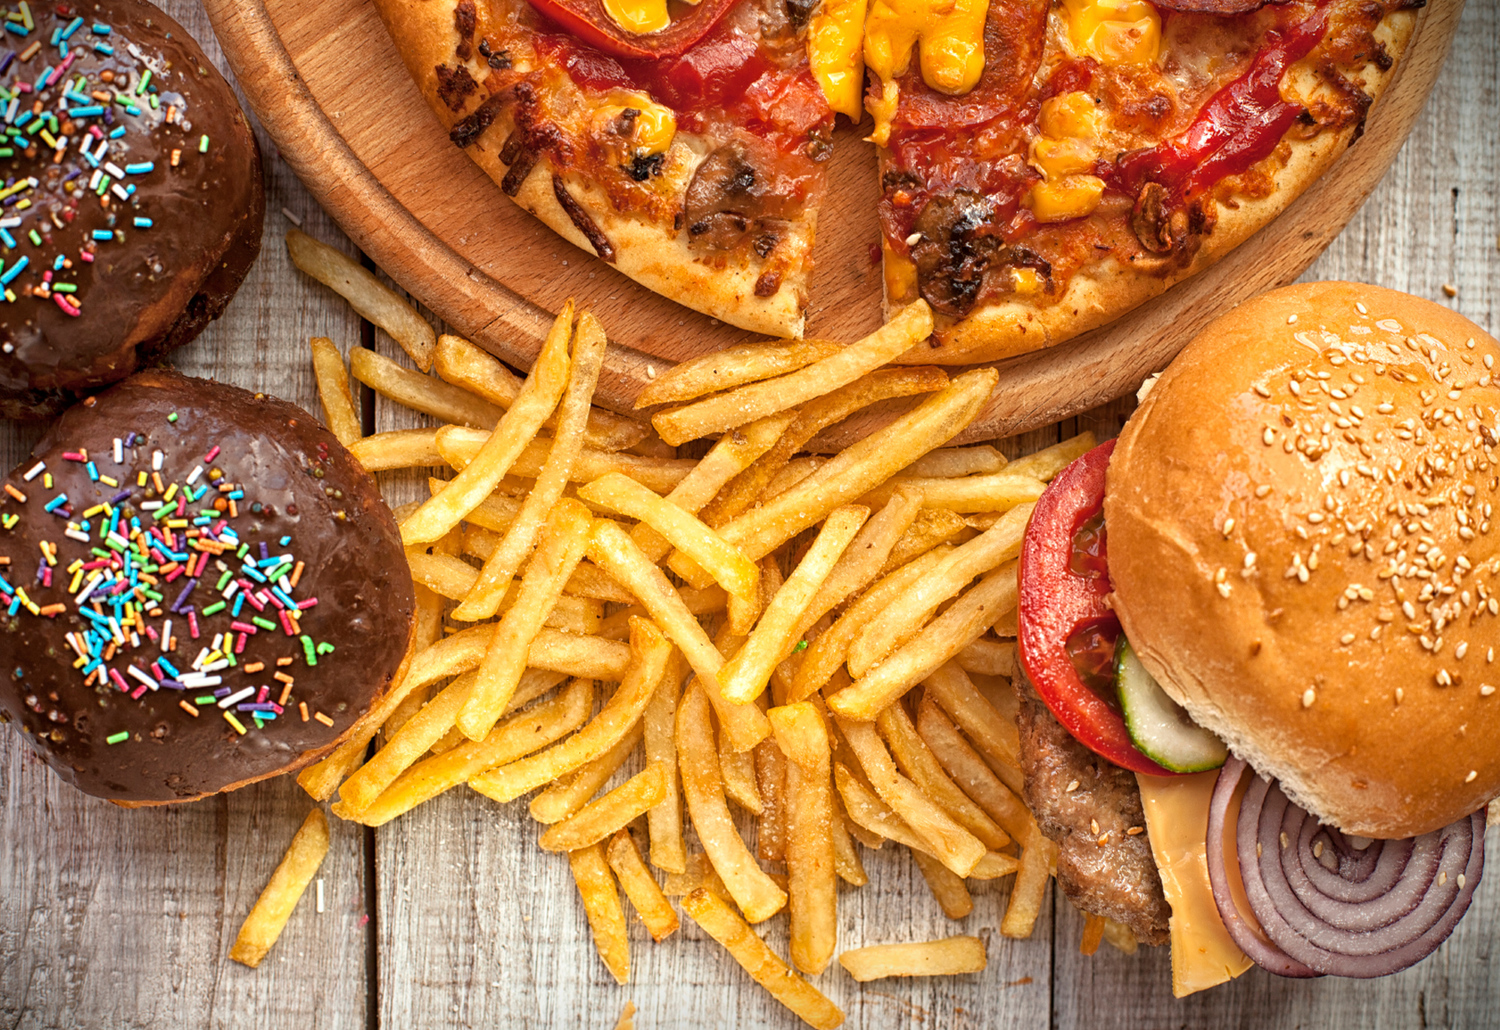 Τα 8 σημαντικότερα διατροφικά λάθη που κάνεις ακόμα και χωρίς να το καταλάβεις!